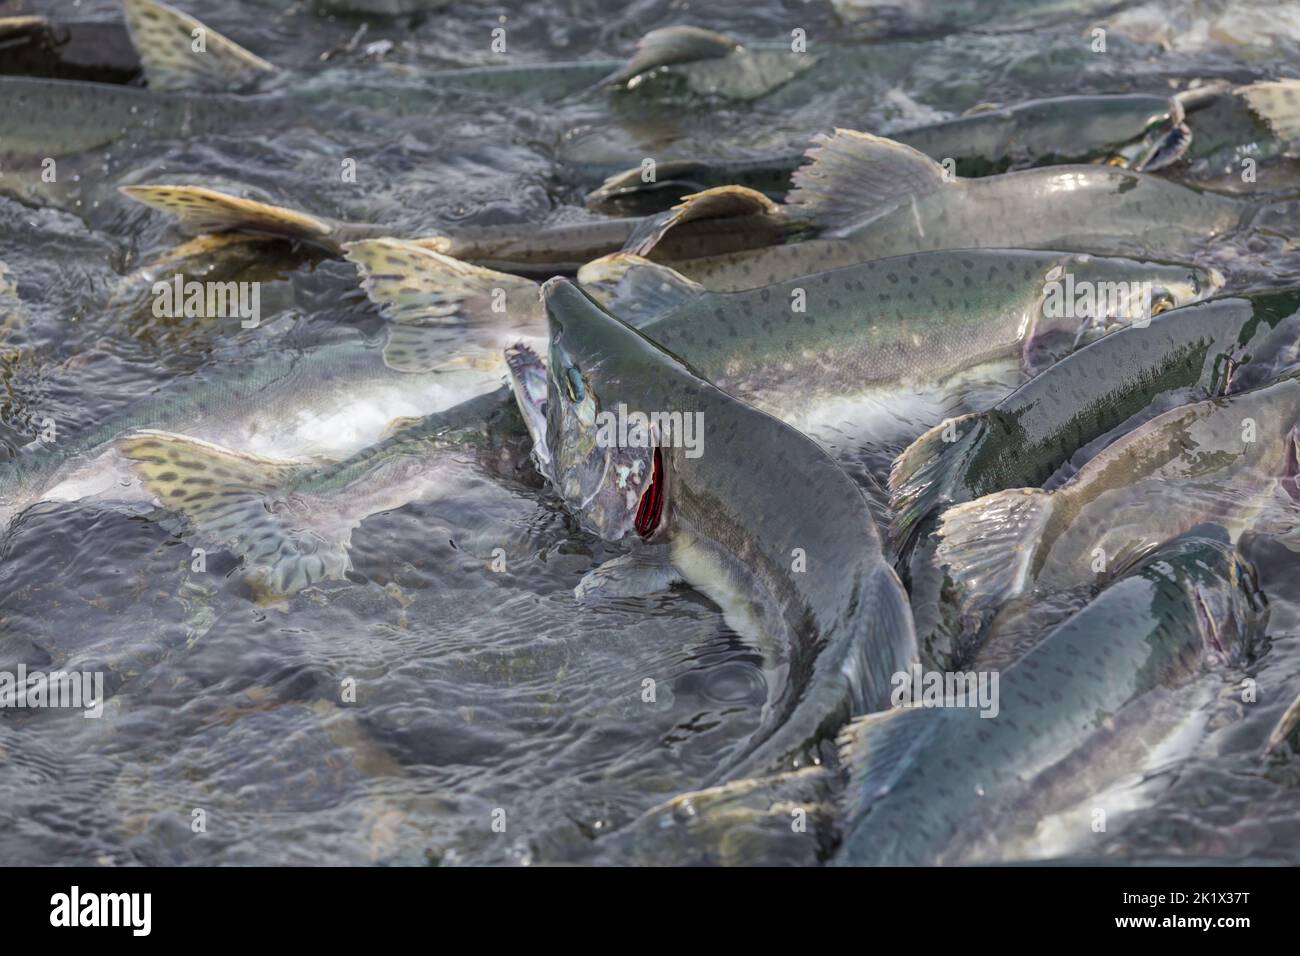 salmon spawning in Alaska river Stock Photo